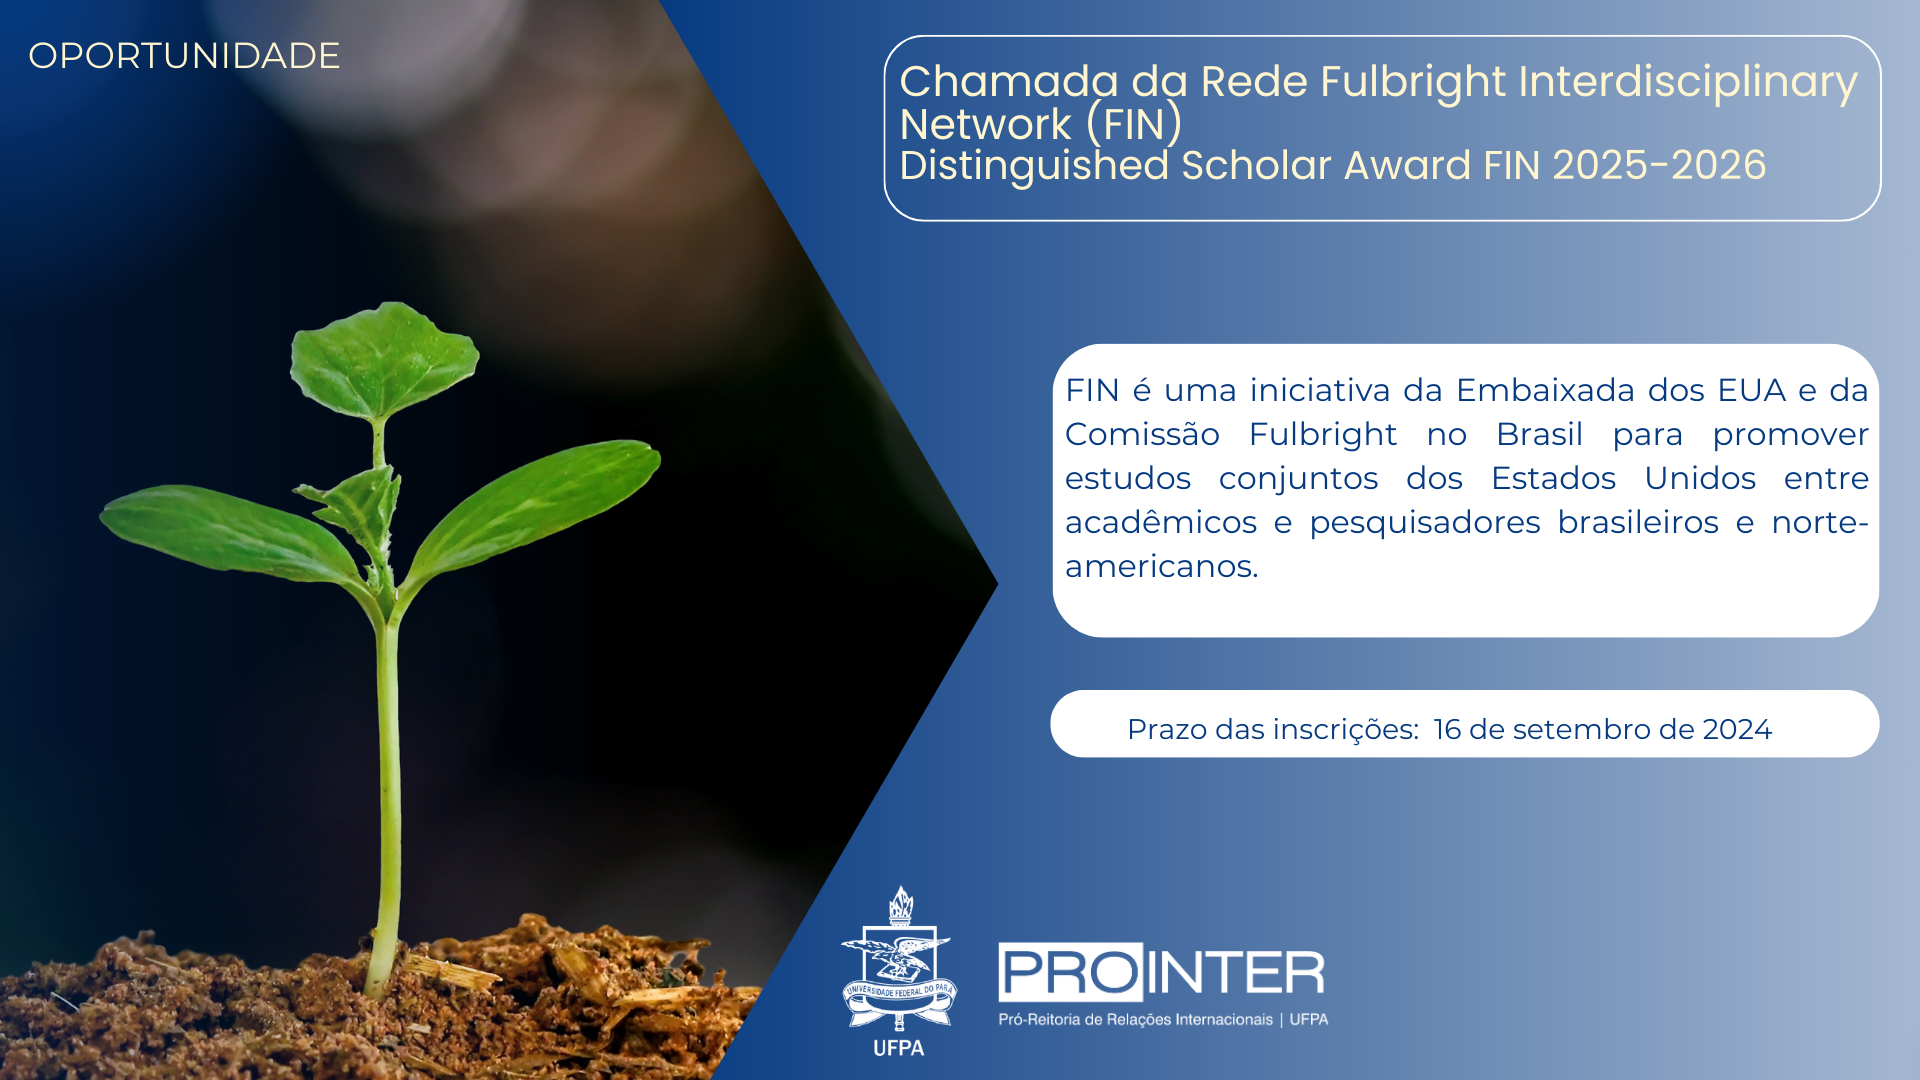 Chamada da Rede Fulbright Interdisciplinary Network (FIN) Distinguished Scholar Award da FIN 2025-2026